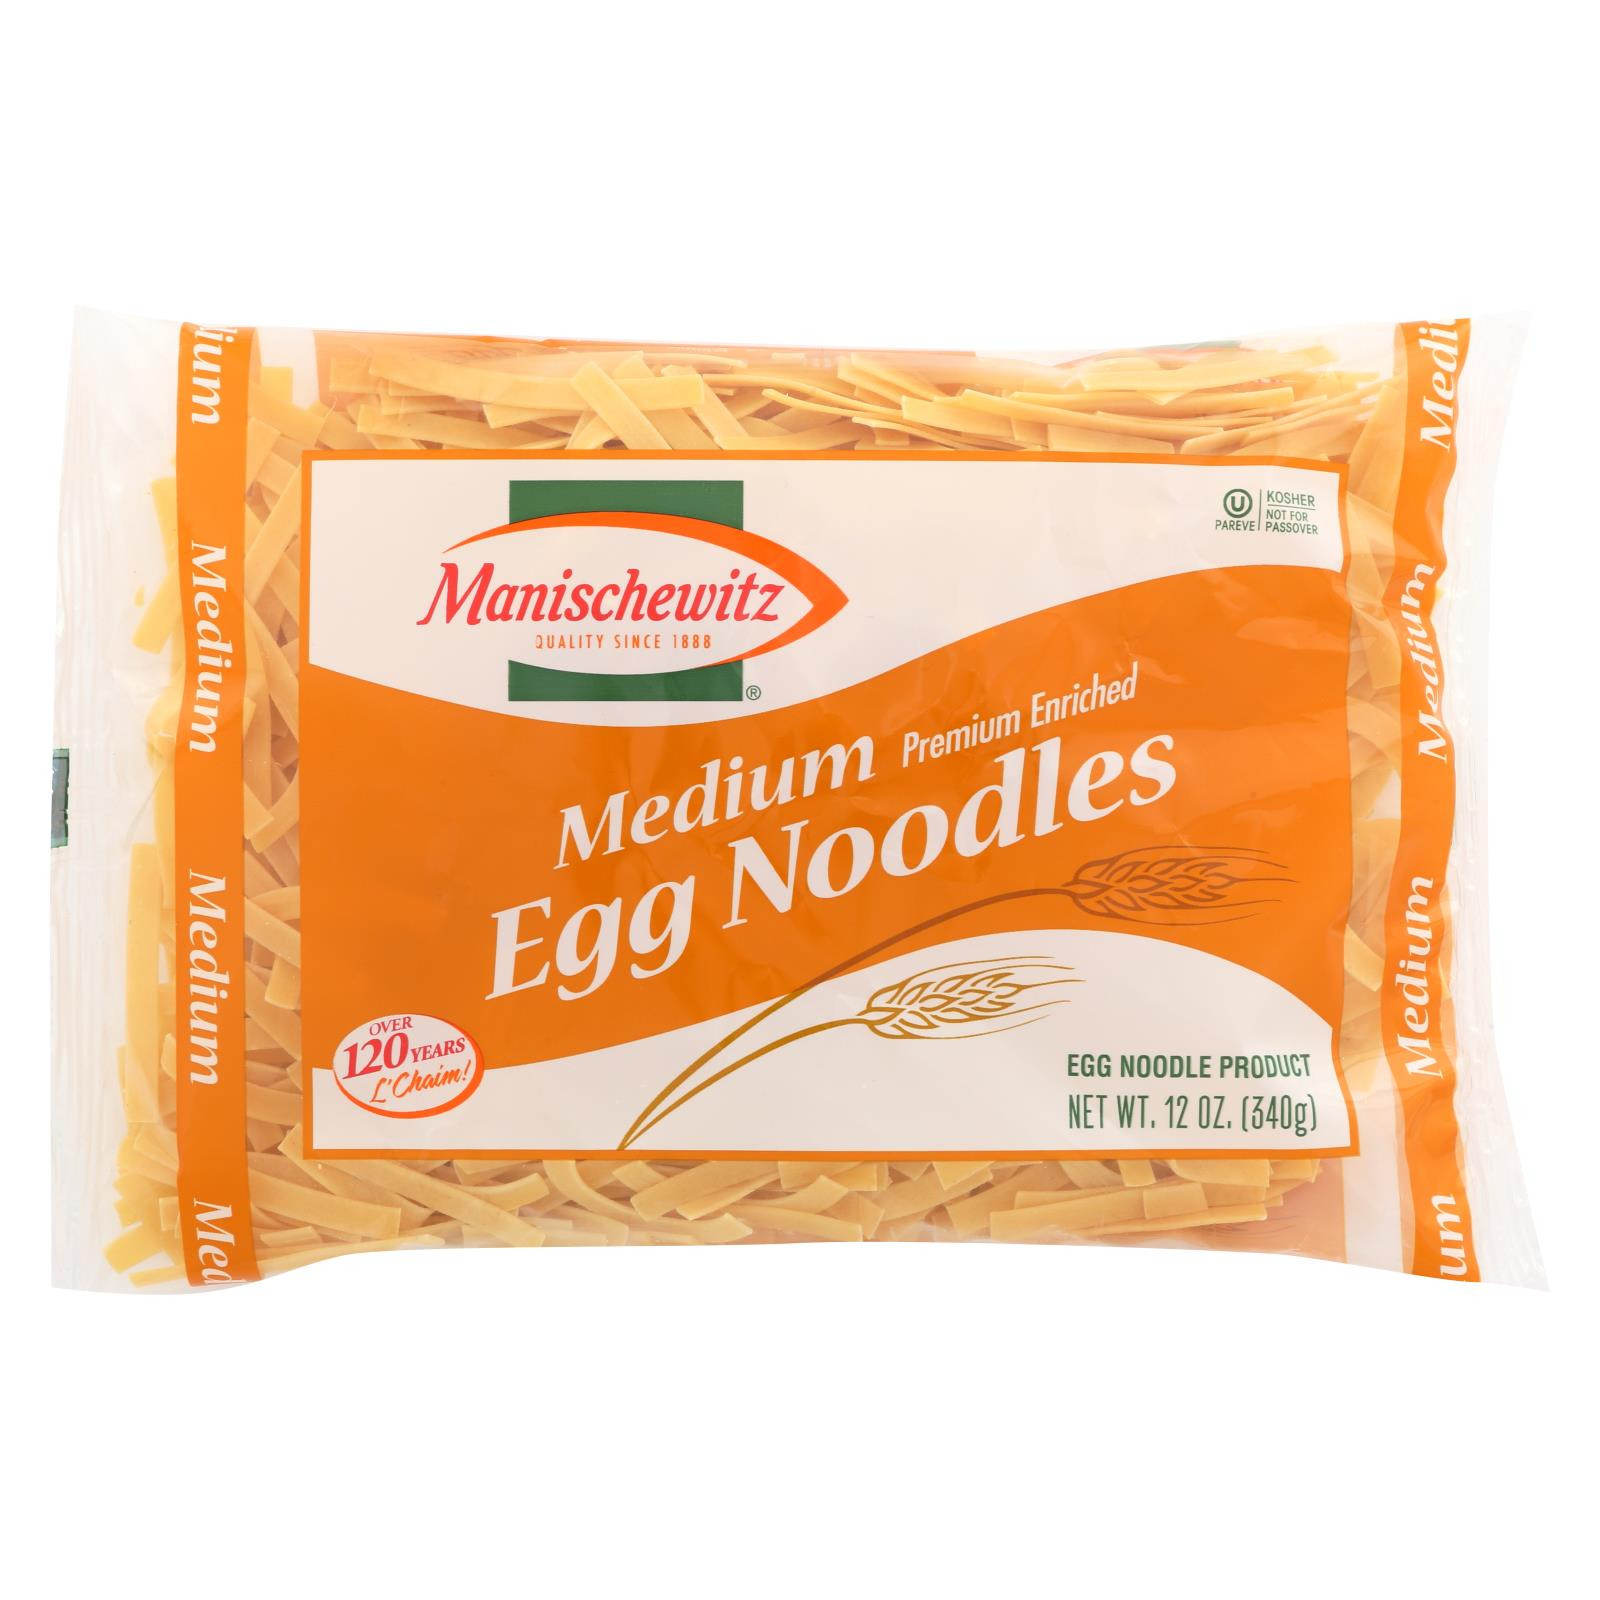 Manischewitz Egg Noodles
 Manischewitz Egg Noodles Medium Case 12 12 Oz